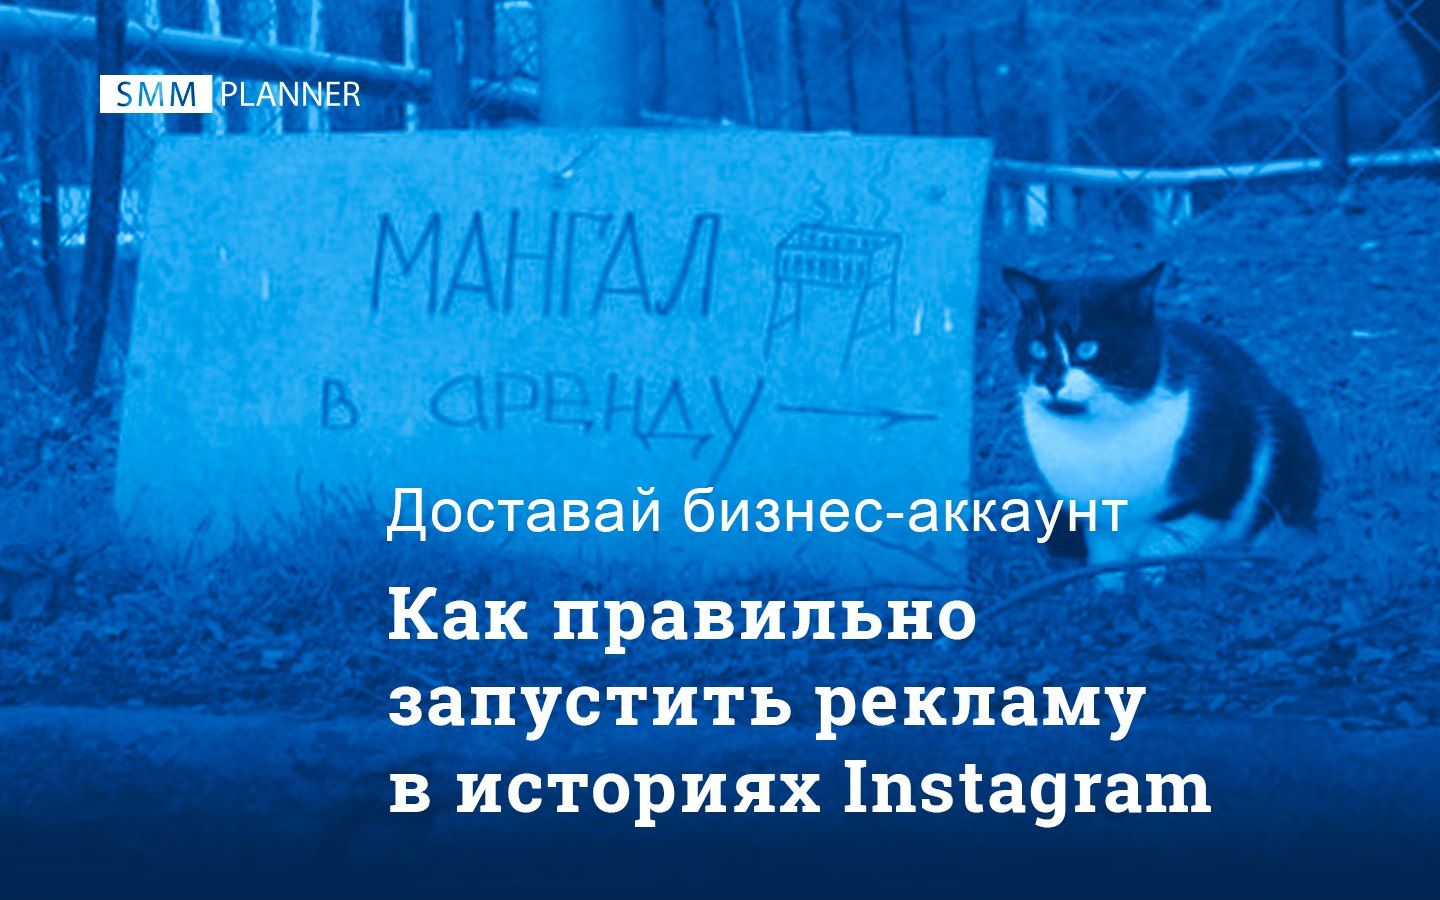 Как правильно запустить рекламу в историях Instagram*